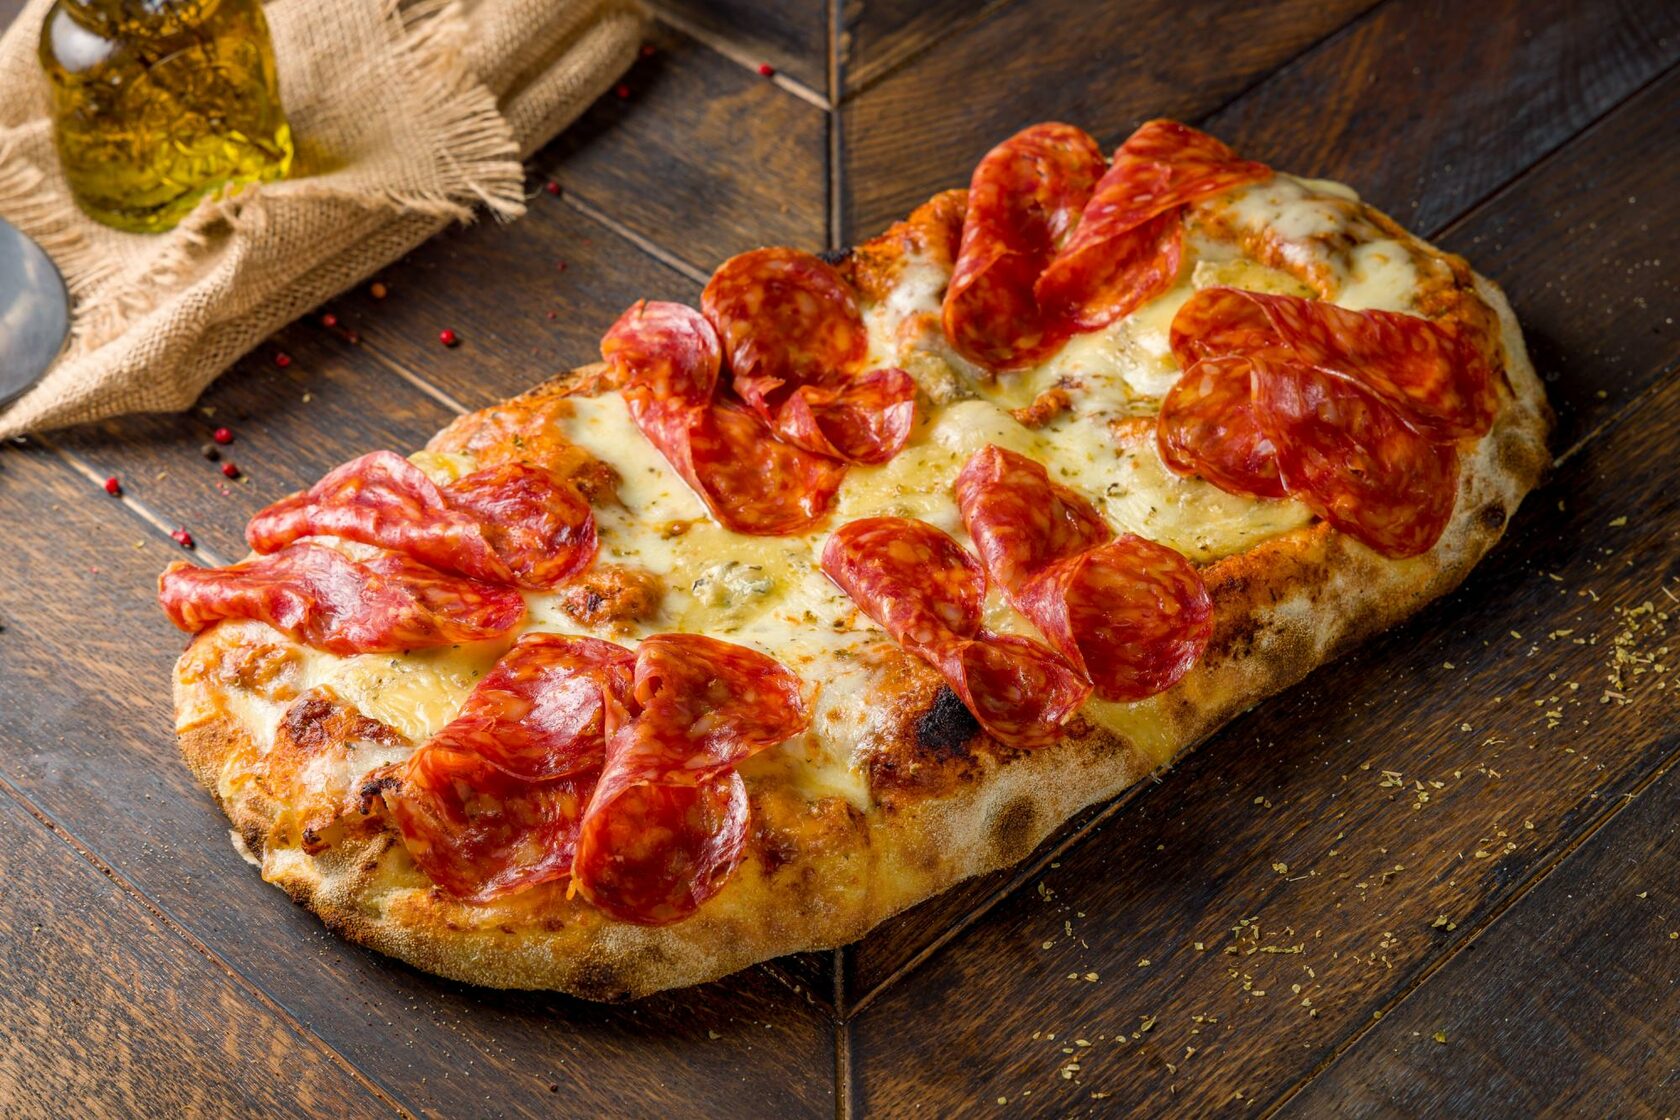 римское тесто для пиццы купить в москве фото 79